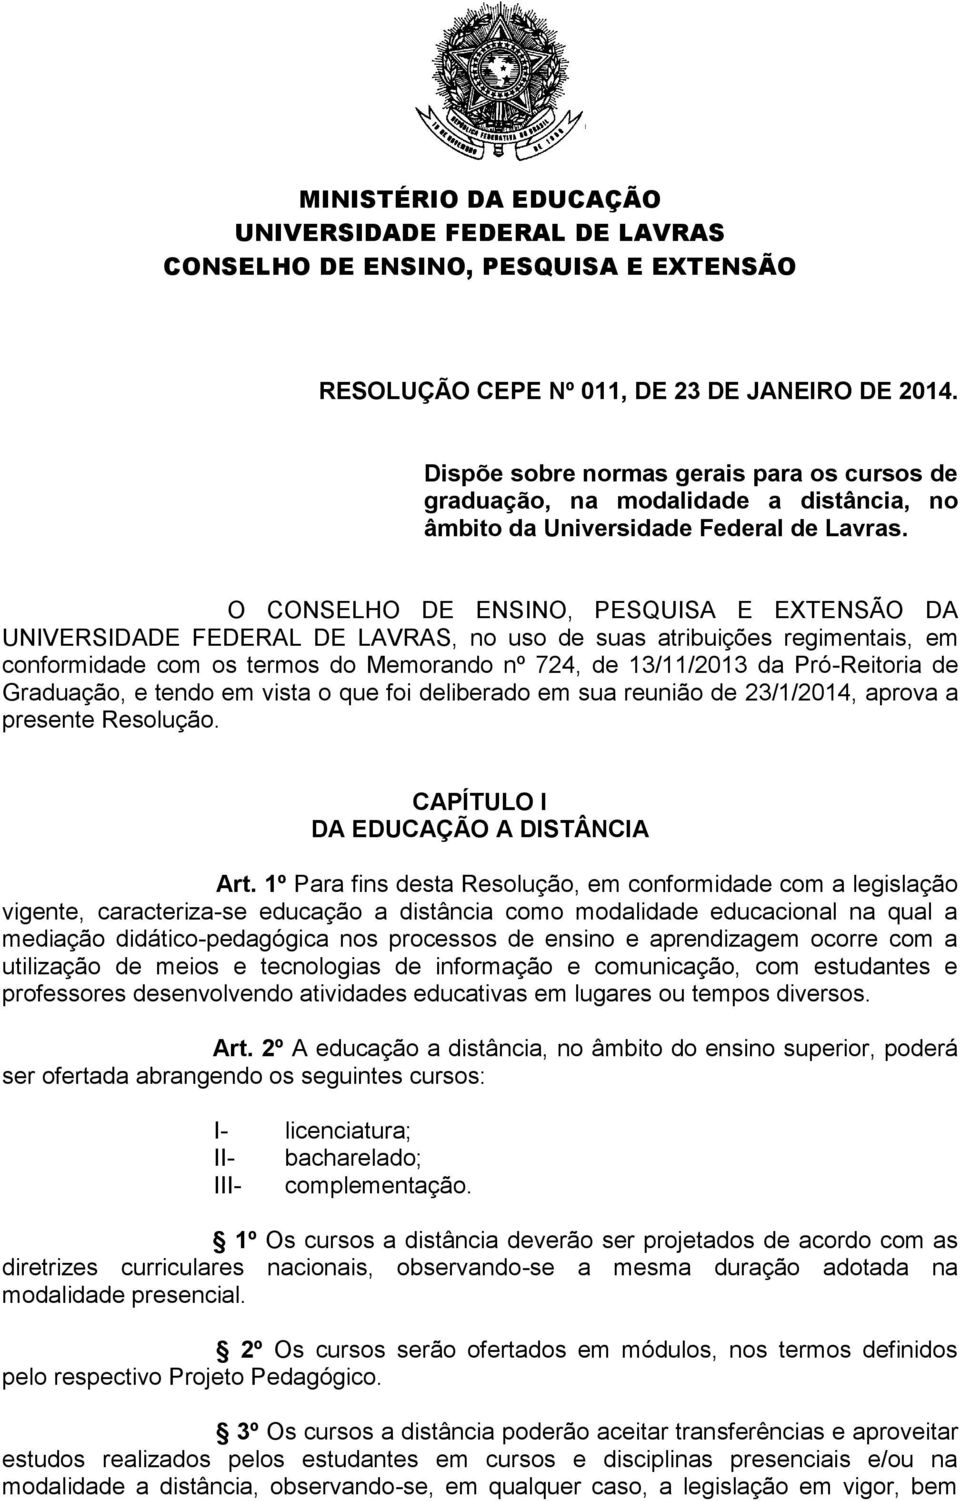 O CONSELHO DE ENSINO, PESQUISA E EXTENSÃO DA UNIVERSIDADE FEDERAL DE LAVRAS, no uso de suas atribuições regimentais, em conformidade com os termos do Memorando nº 724, de 13/11/2013 da Pró-Reitoria